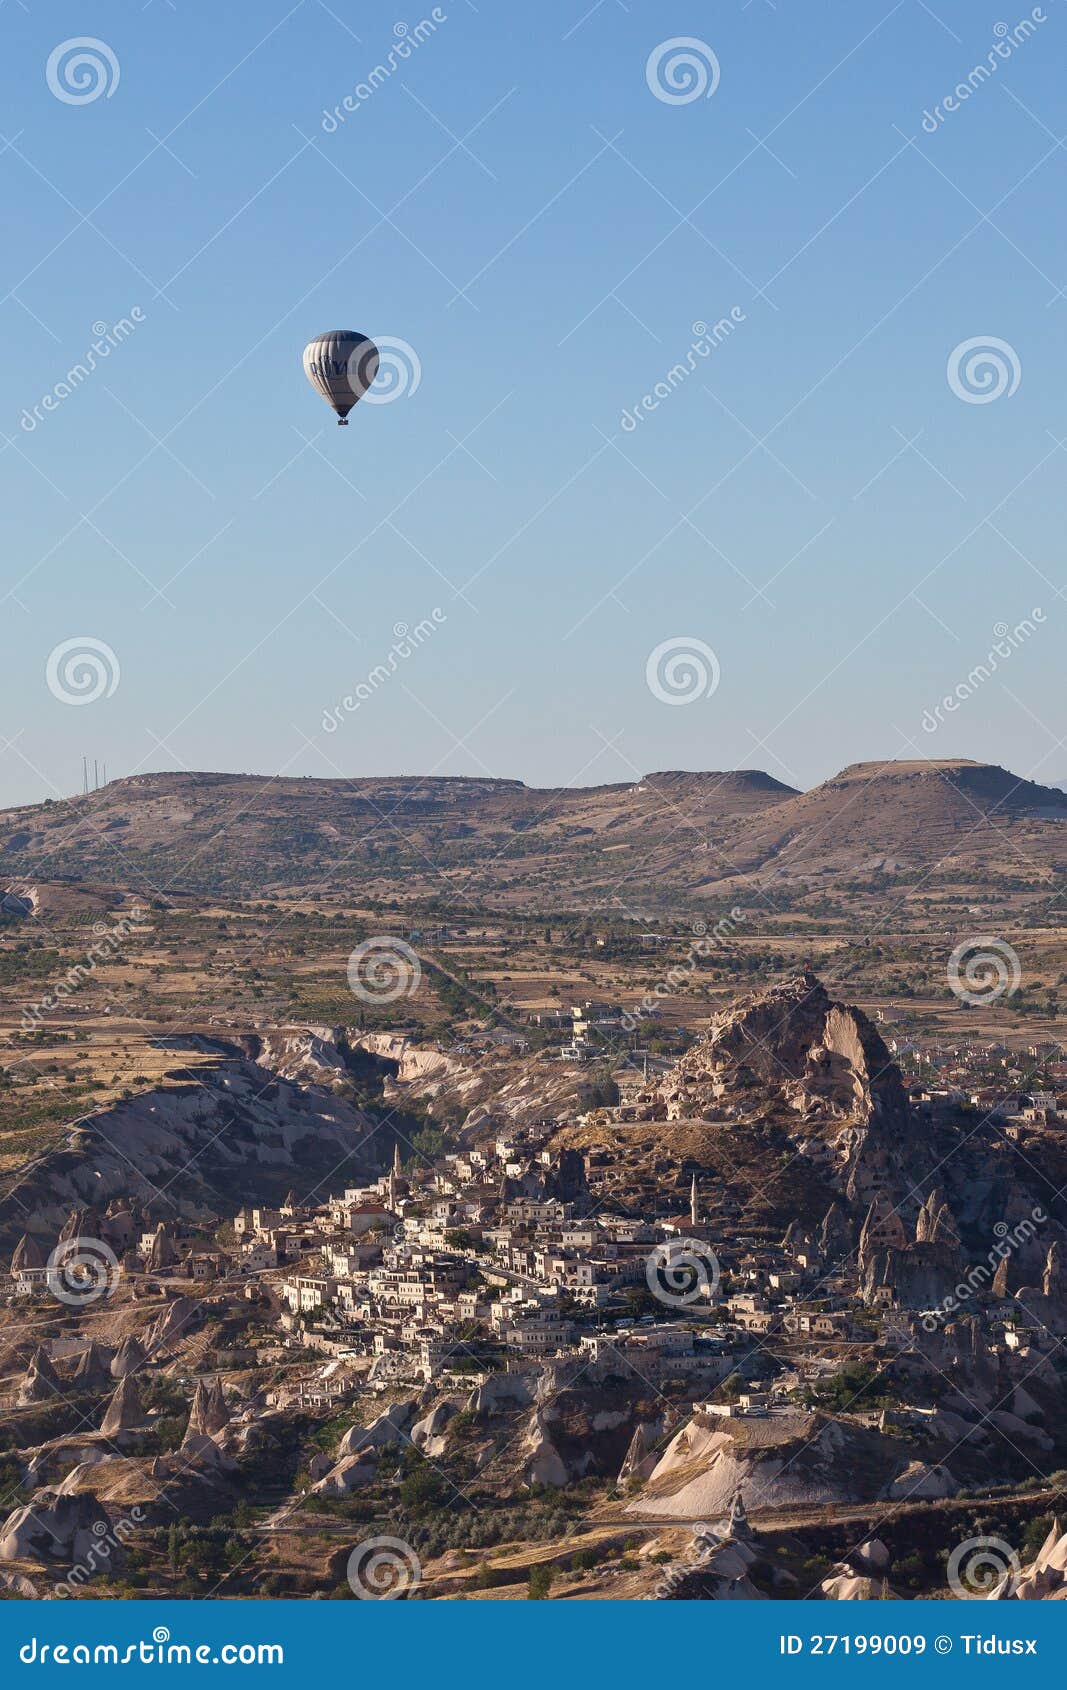 Ballong för varm luft. Ballons för en varm luft flyger ovanför cityLocationen: CappadociaDate: 28 Sep 2012